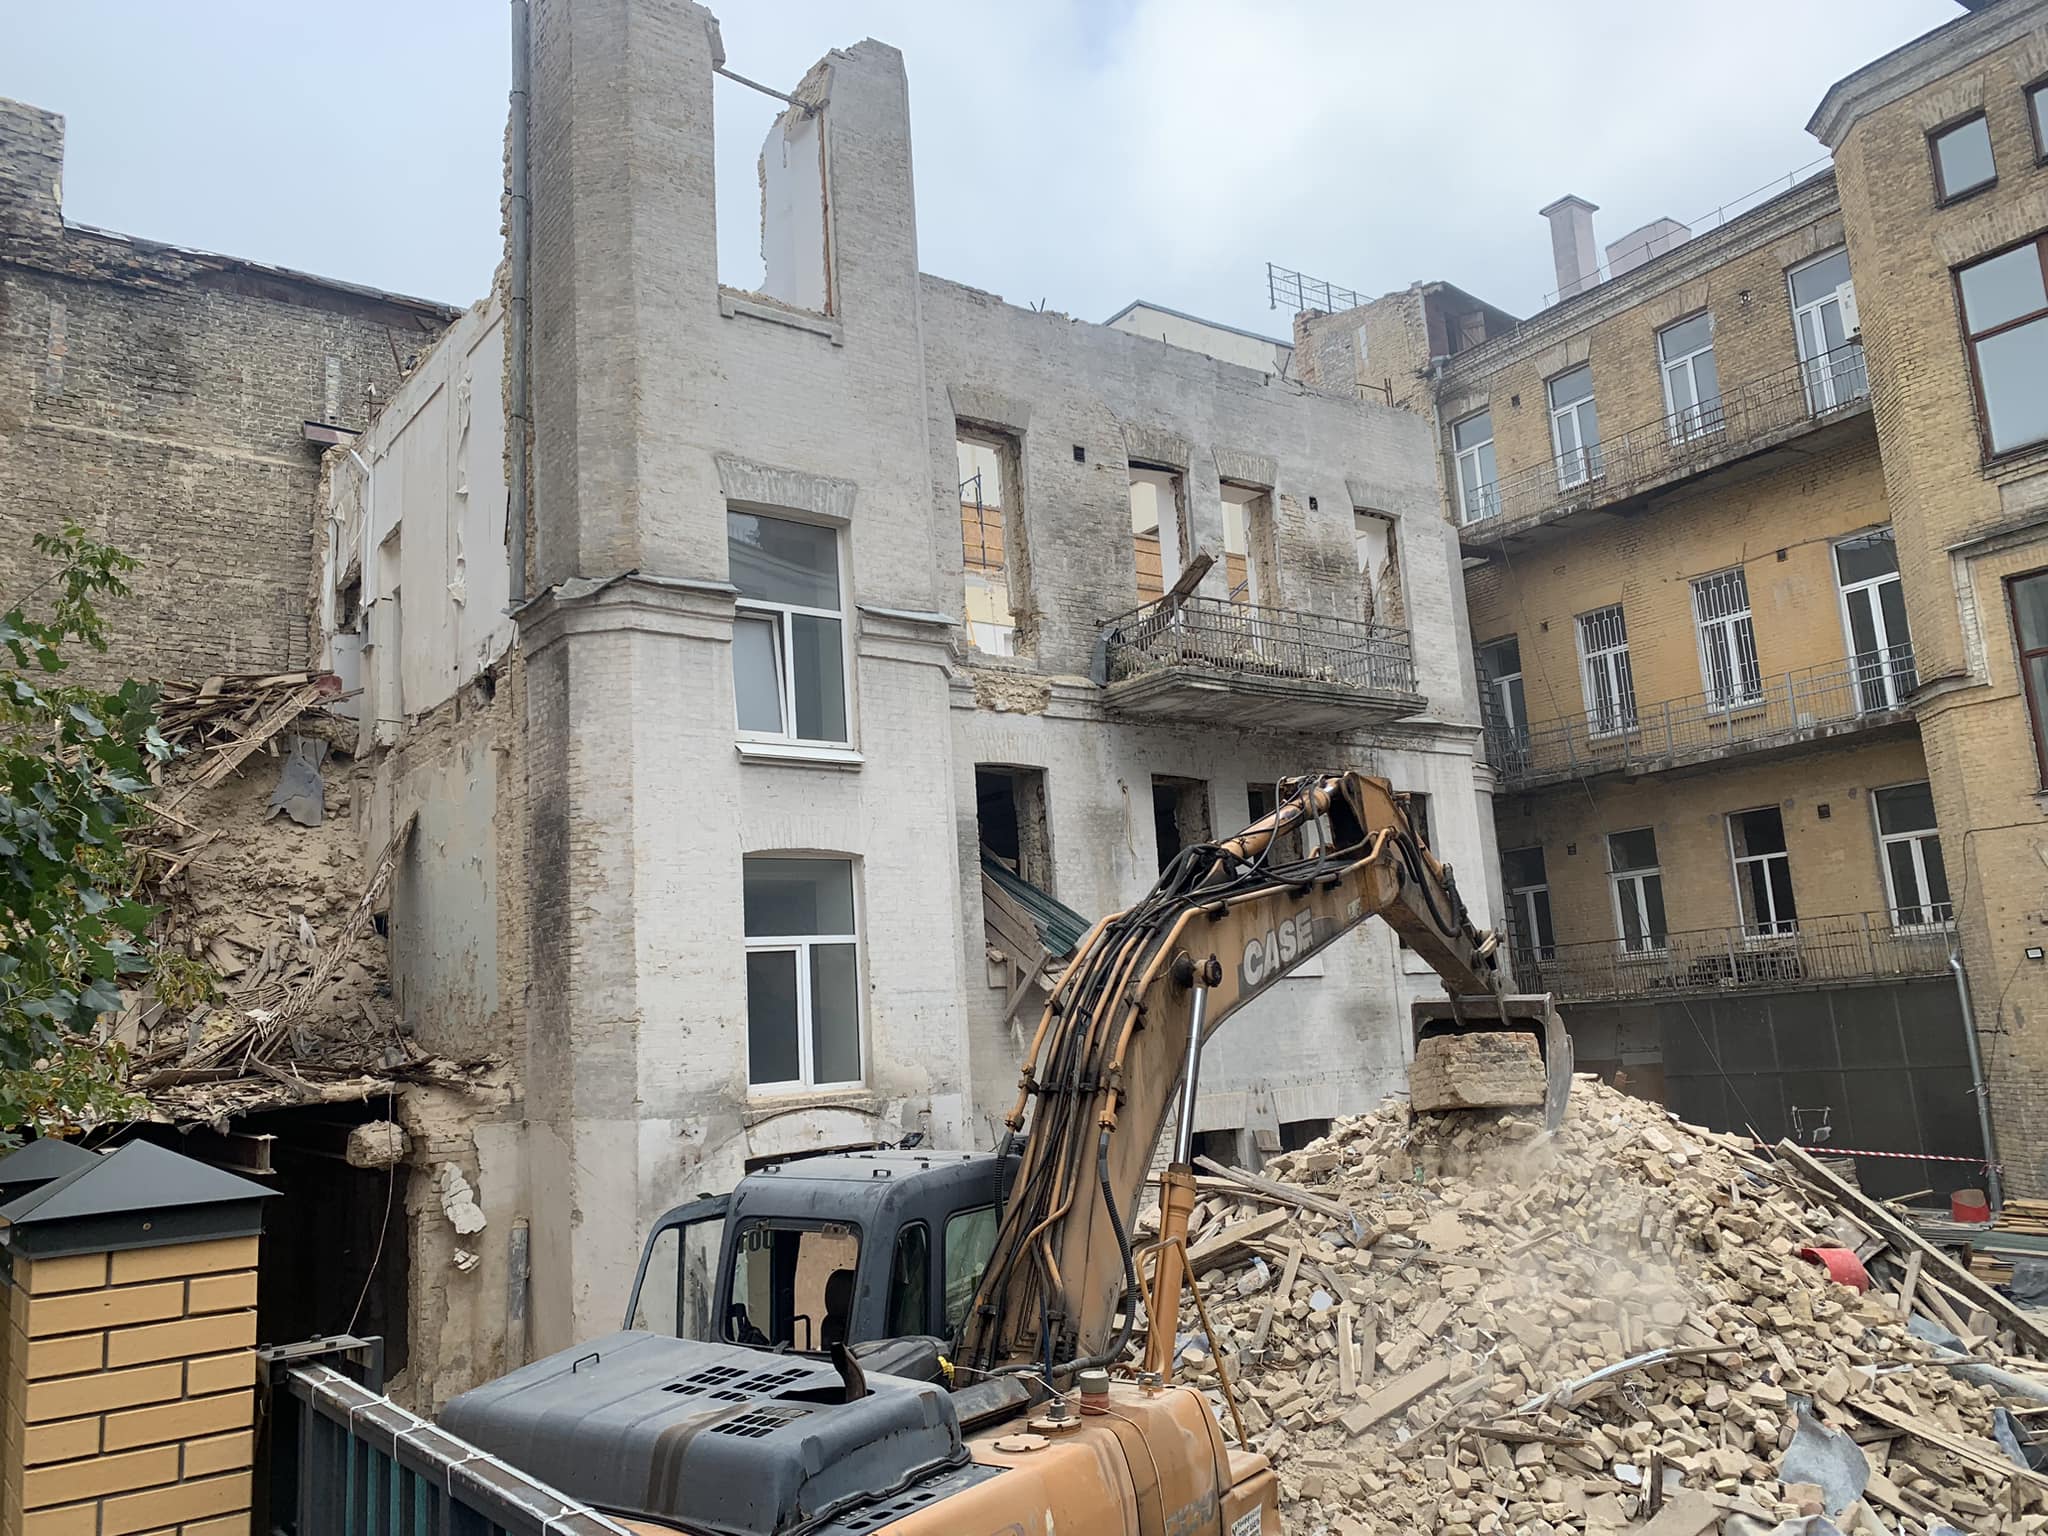 Мінкульт вимагає зупинити демонтаж будинку Київського повітового земства у столиці